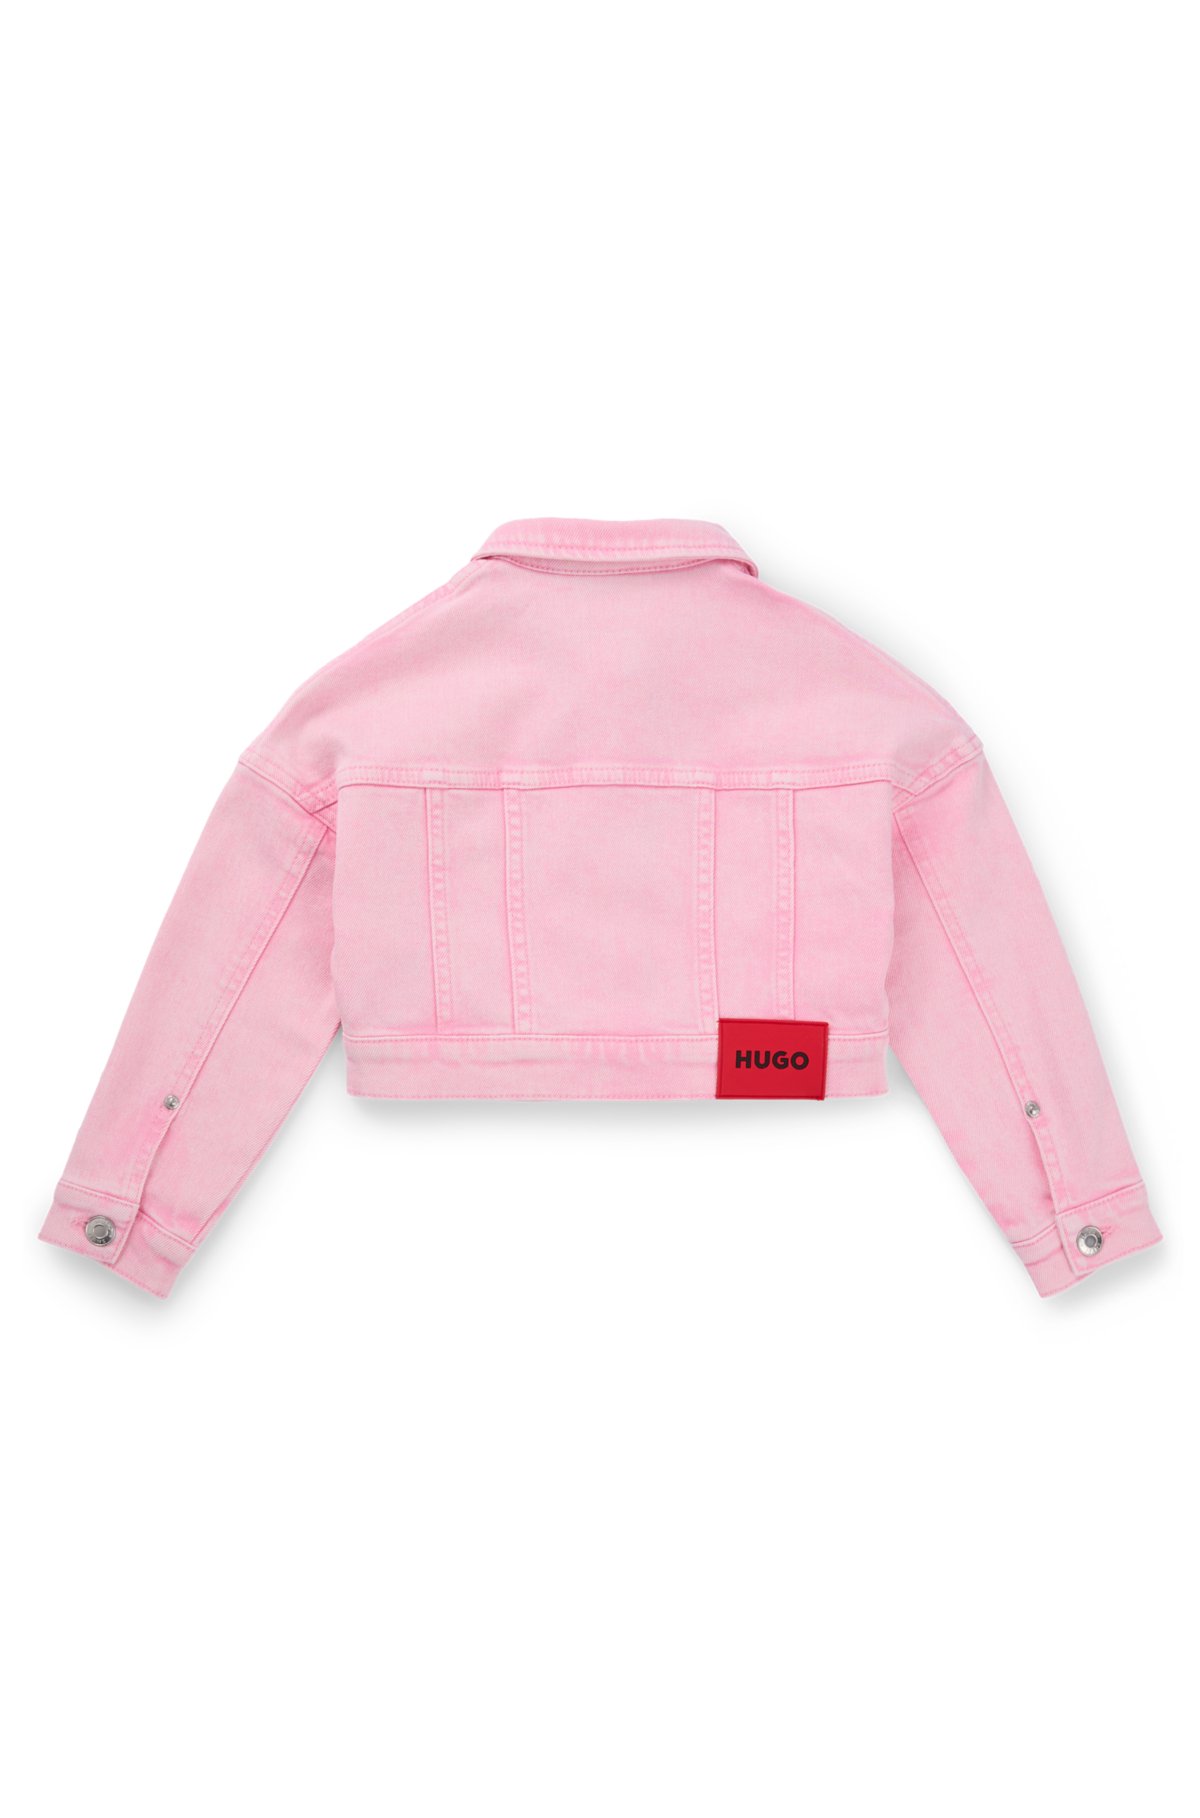 Kids' jacket in overdyed stretch-cotton denim, Pink